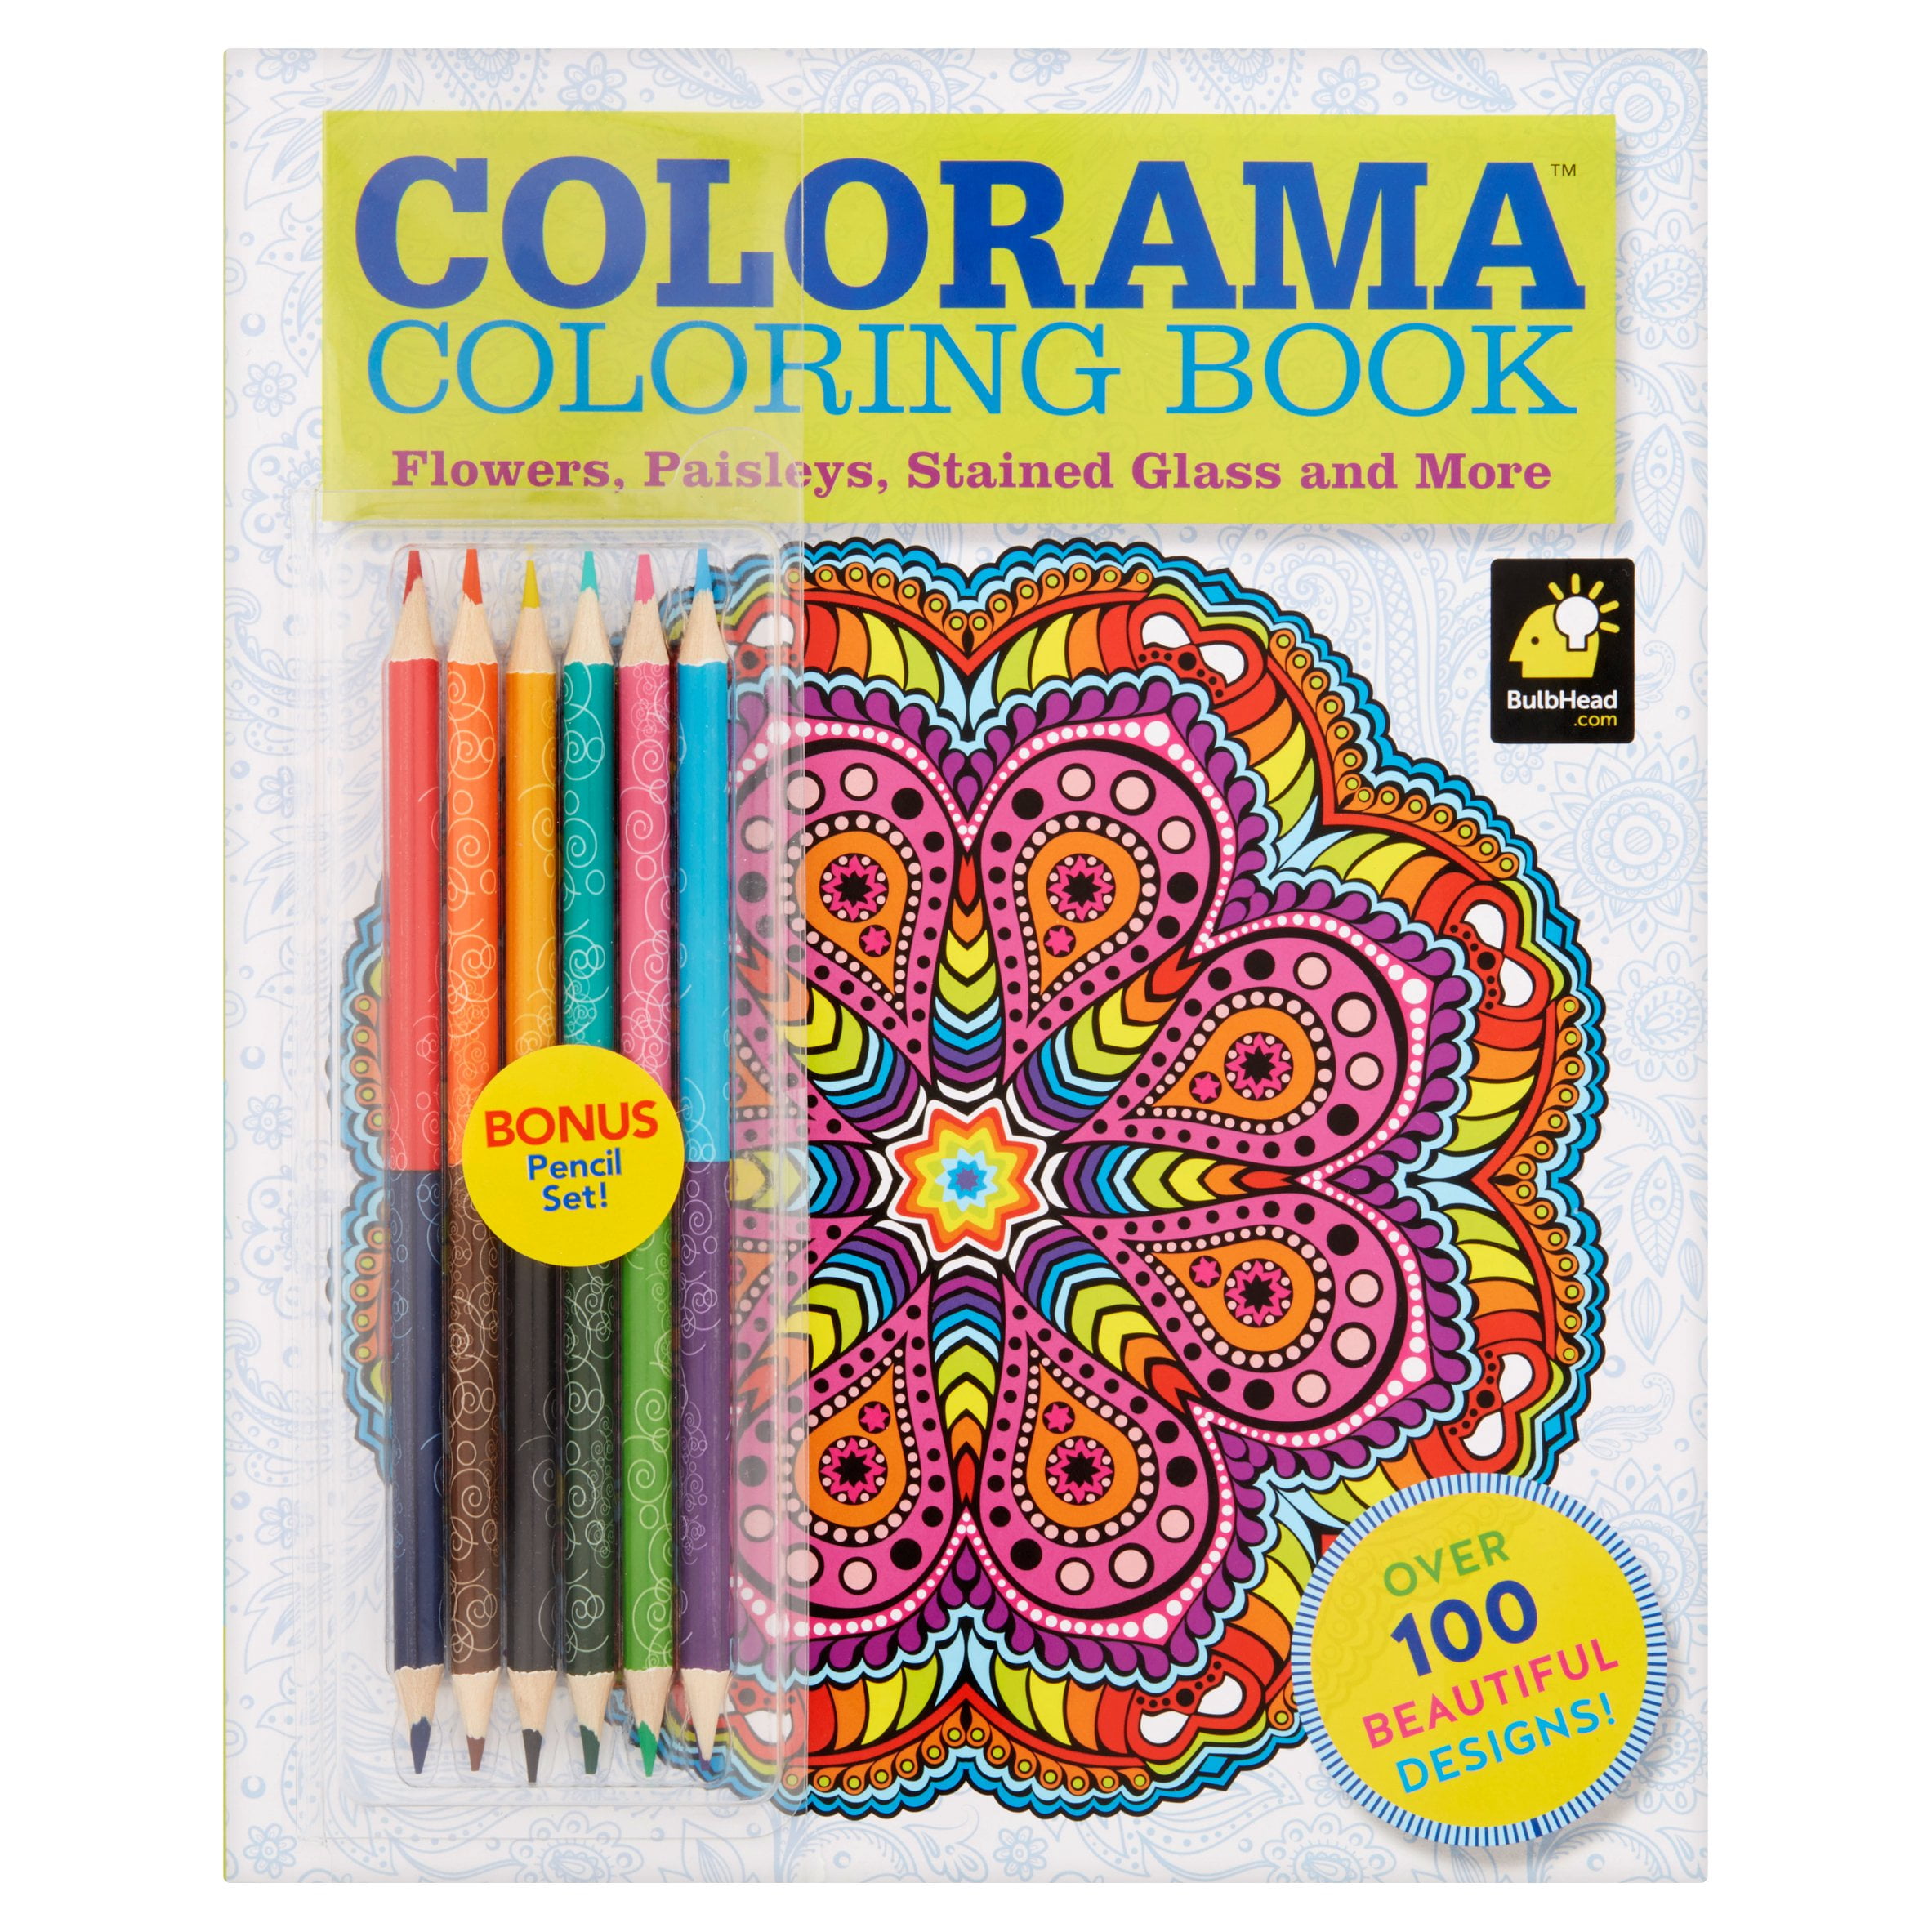 Download Colorama Coloring Book! - Walmart.com - Walmart.com